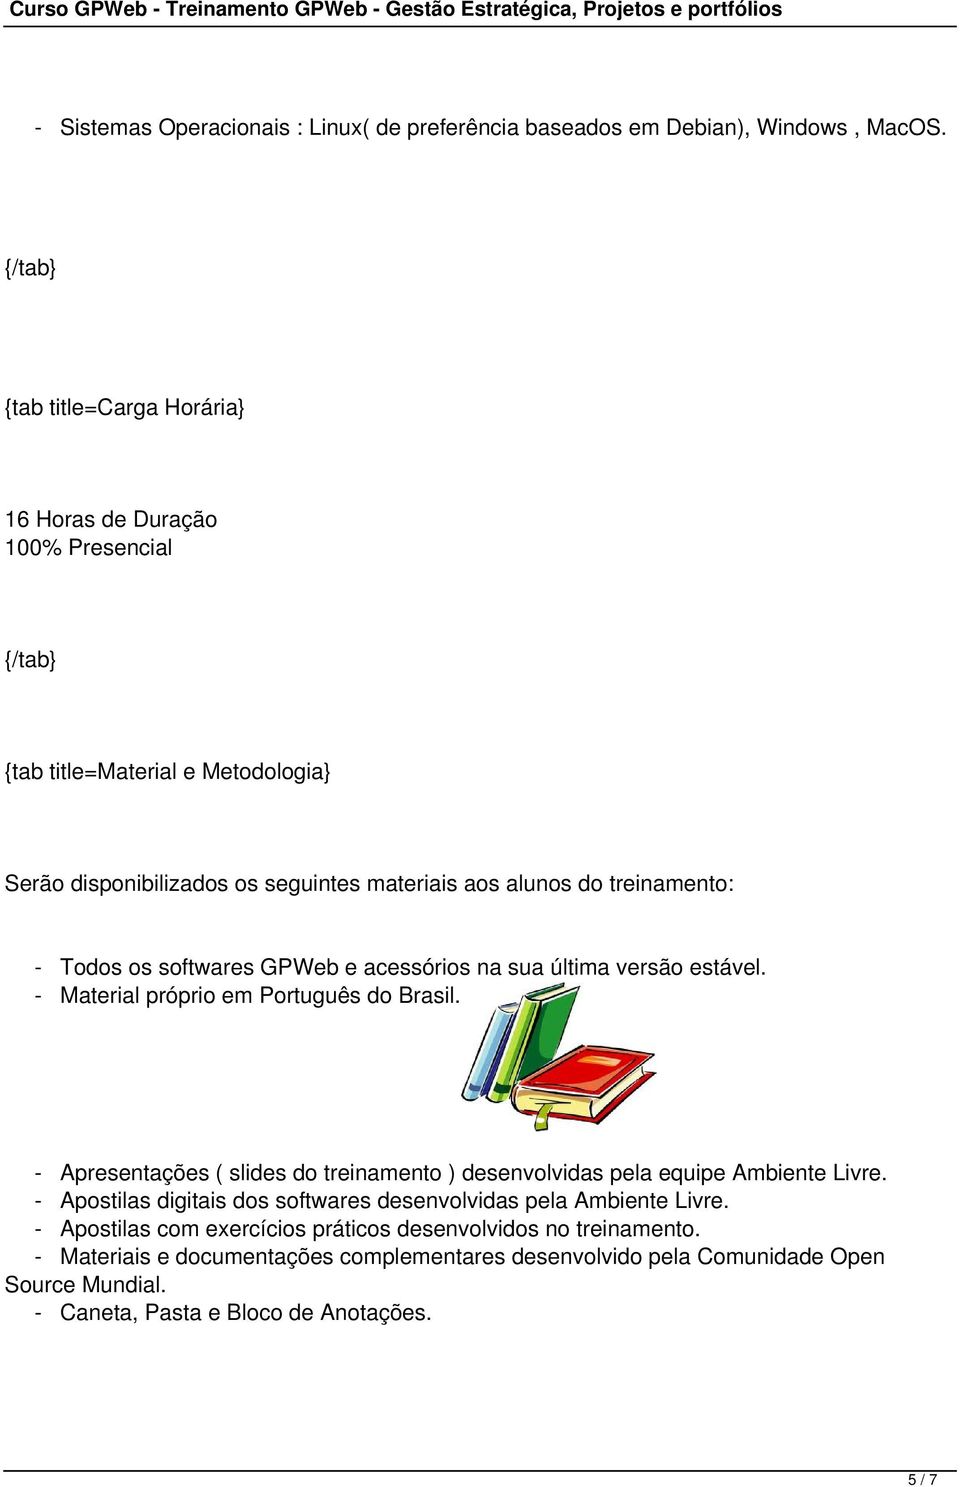 softwares GPWeb e acessórios na sua última versão estável. - Material próprio em Português do Brasil.